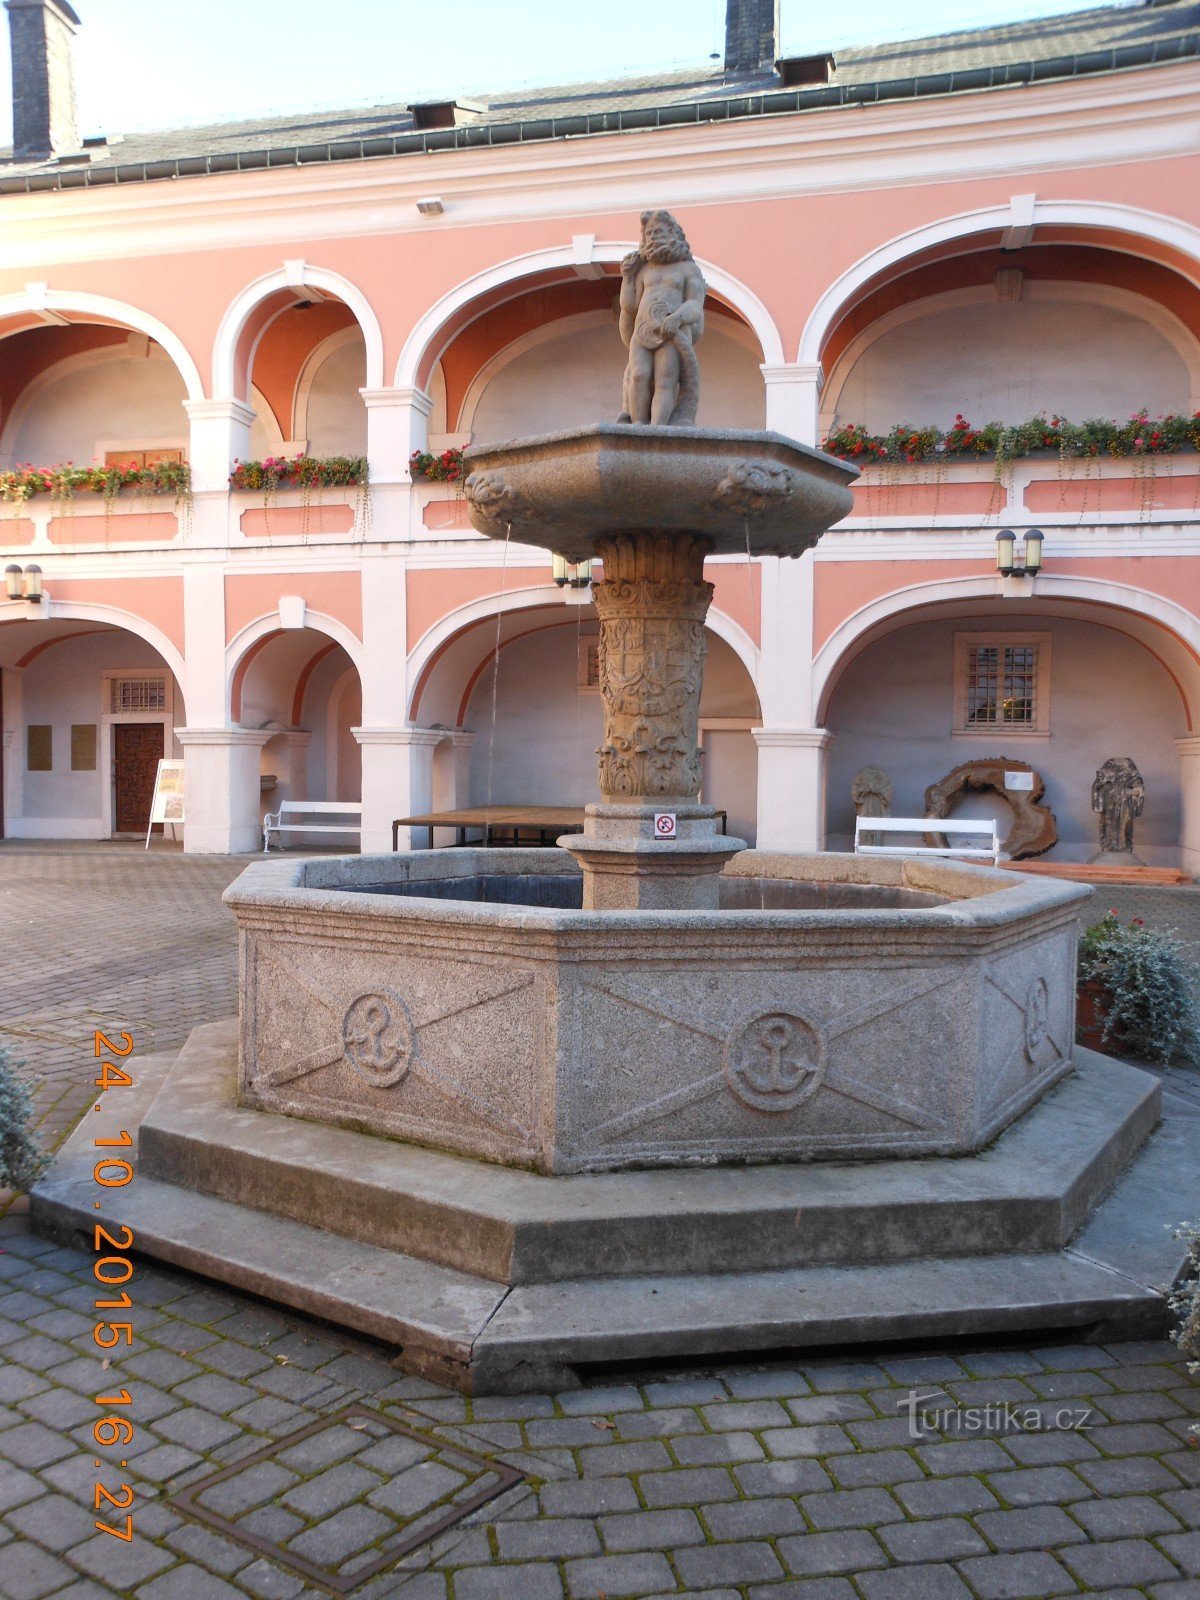 Fontana u dvorcu Sokolovsky